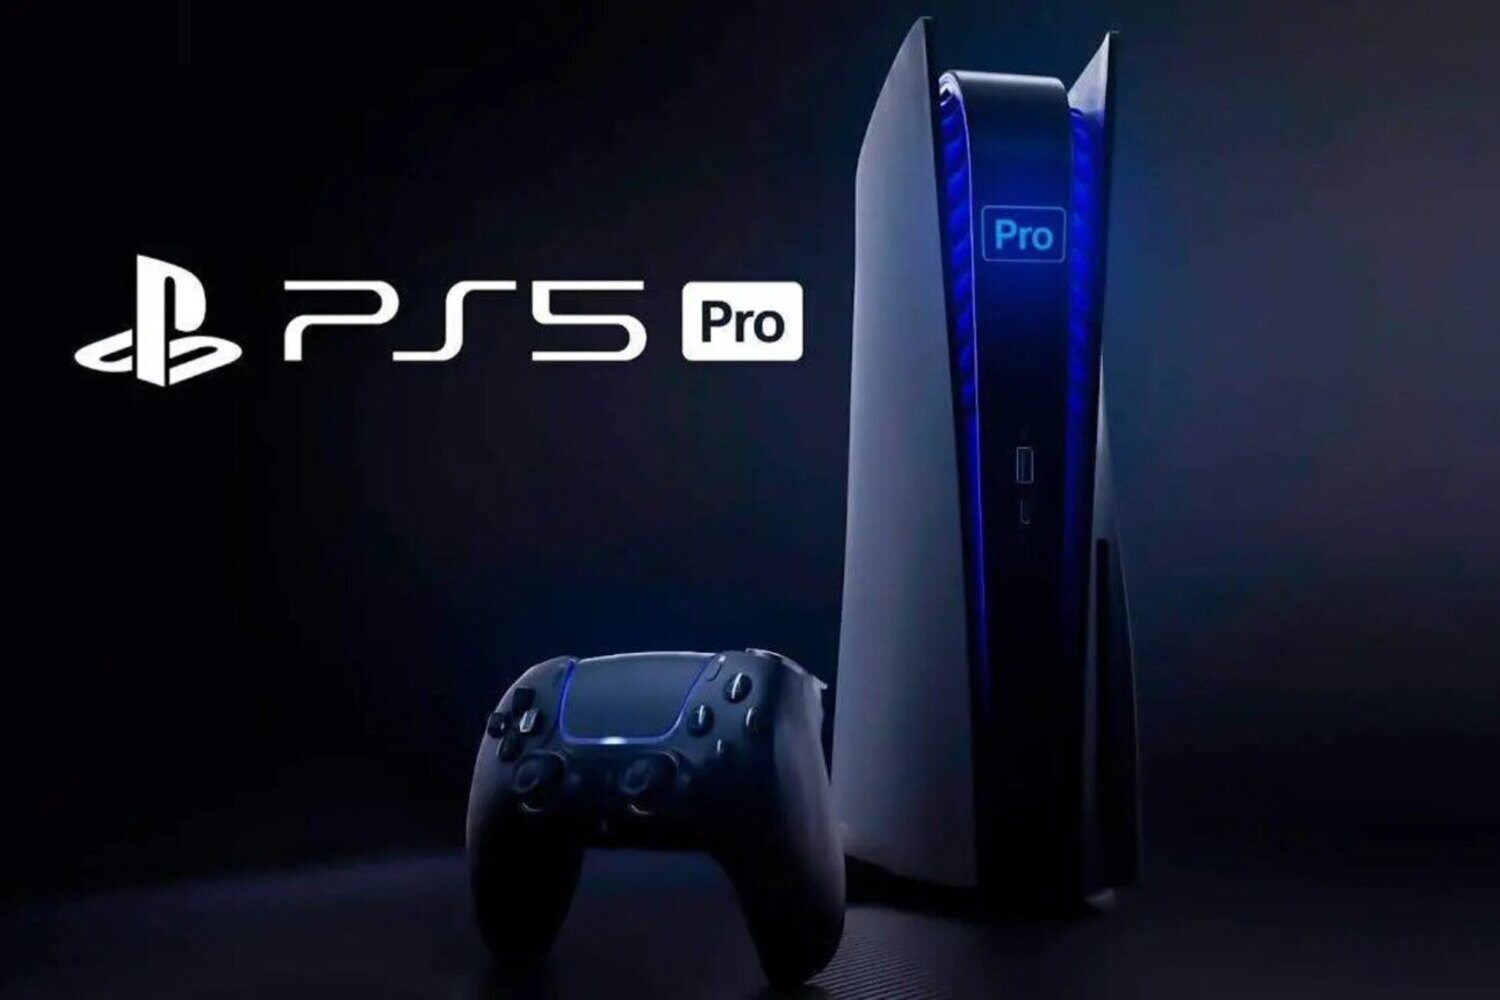 PS5 Pro : prix, date de sortie, design, caractéristiques, on fait le point